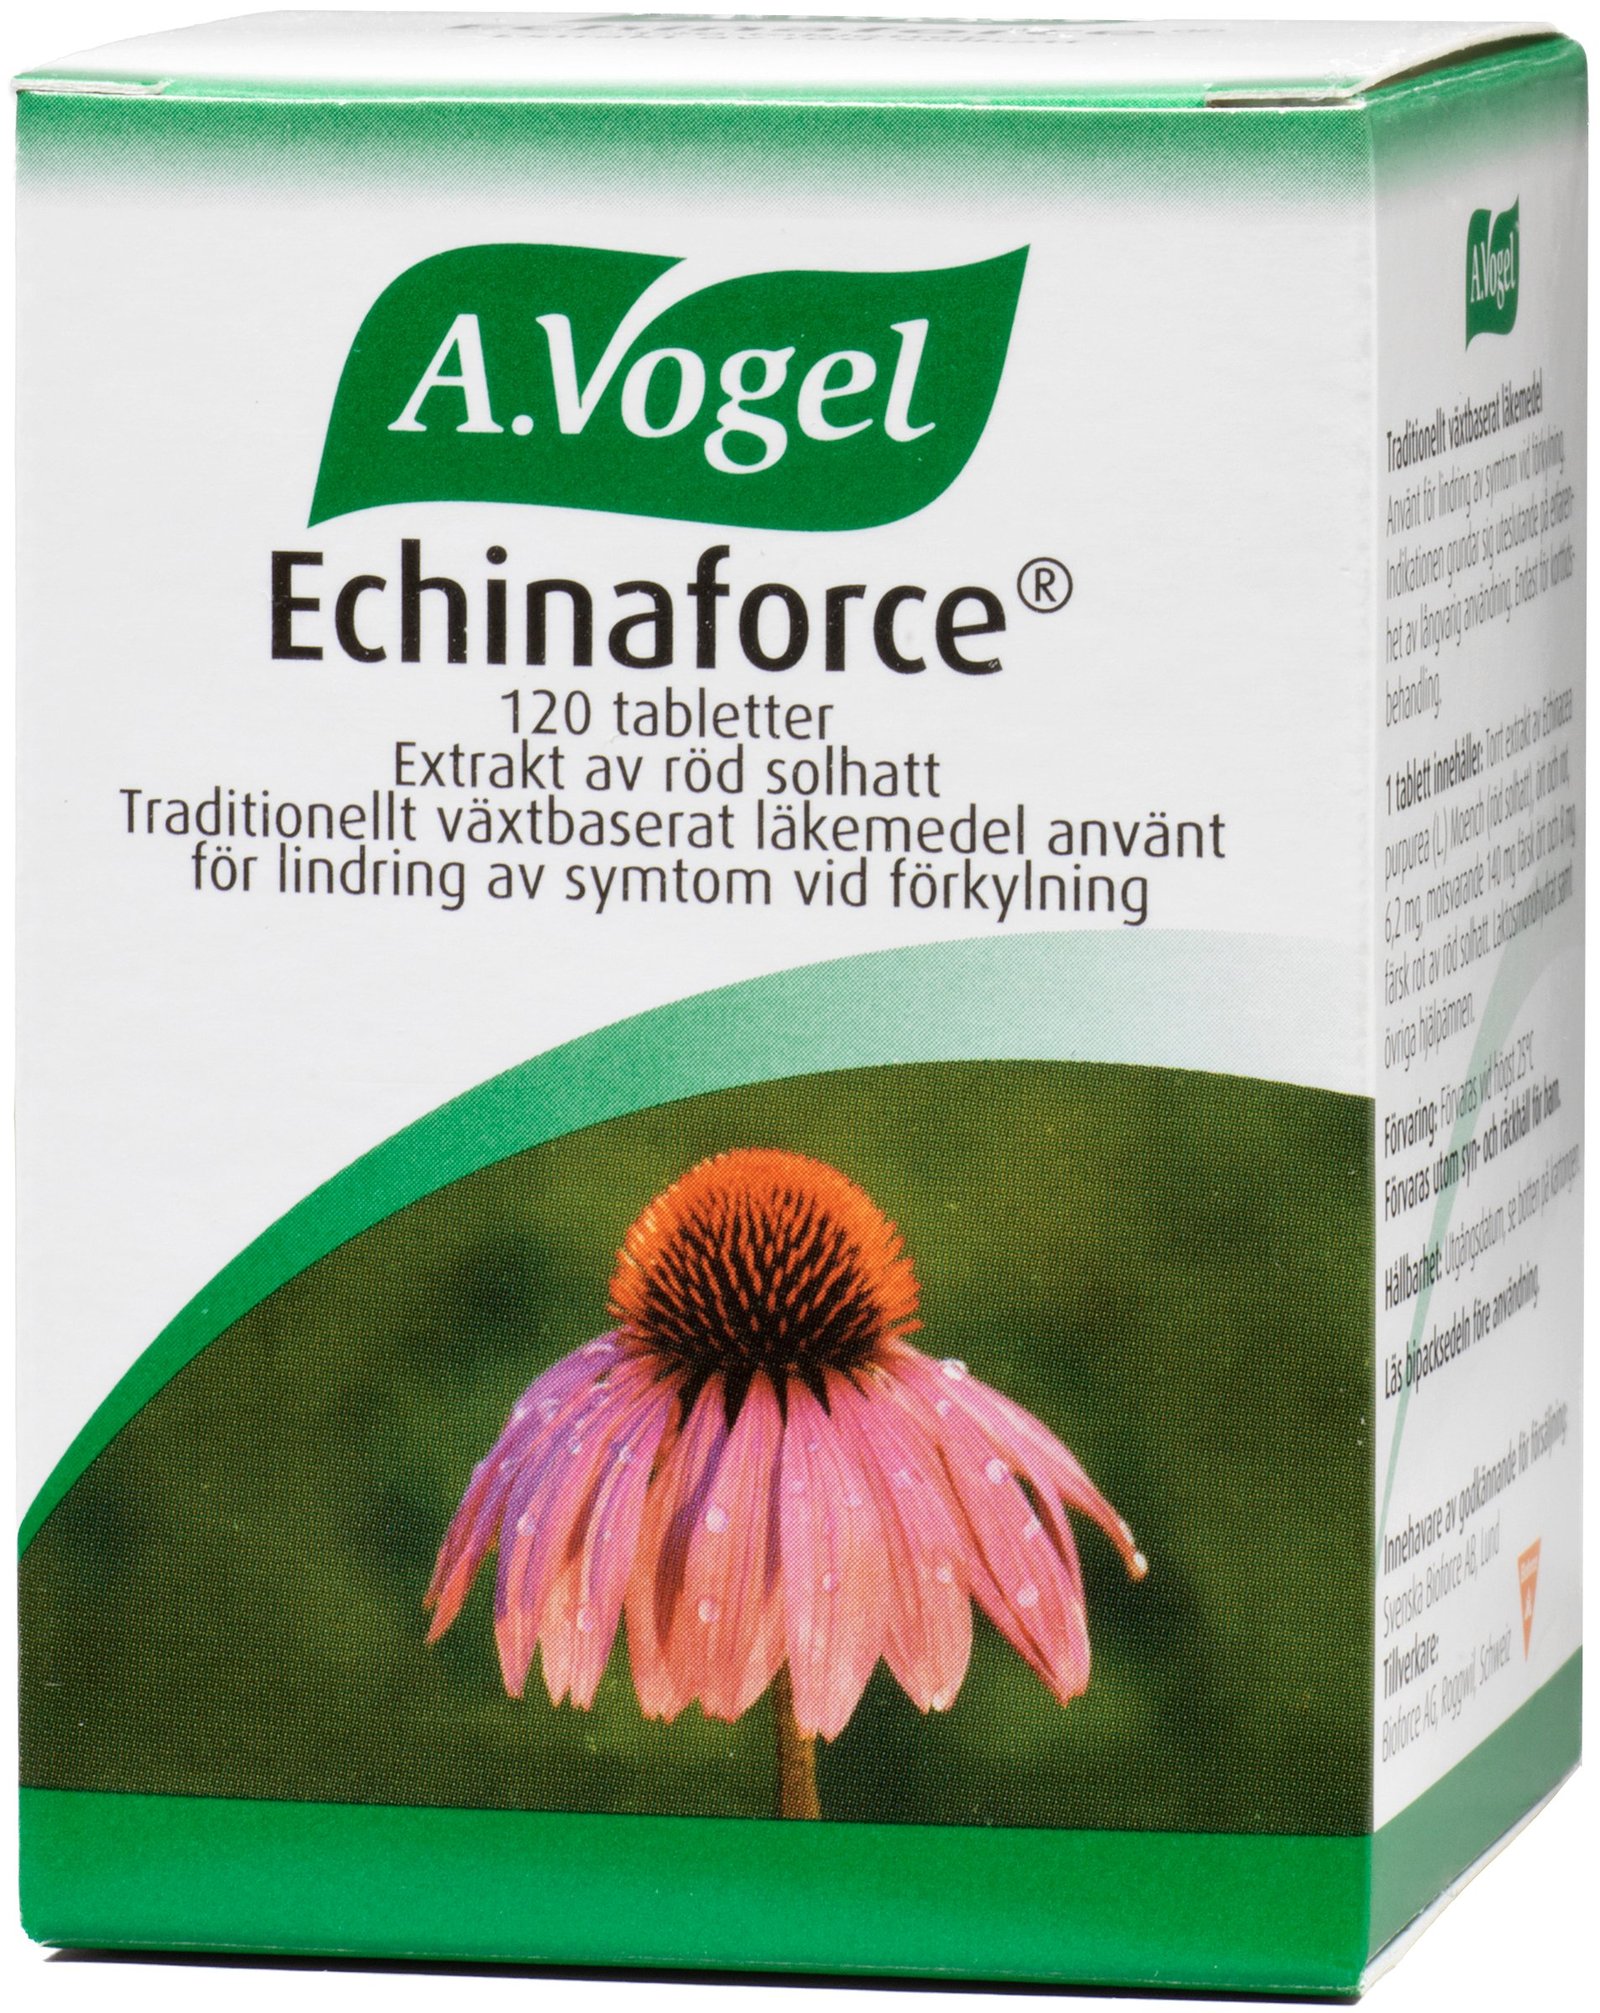 A.Vogel Echinaforce 120 tabletter